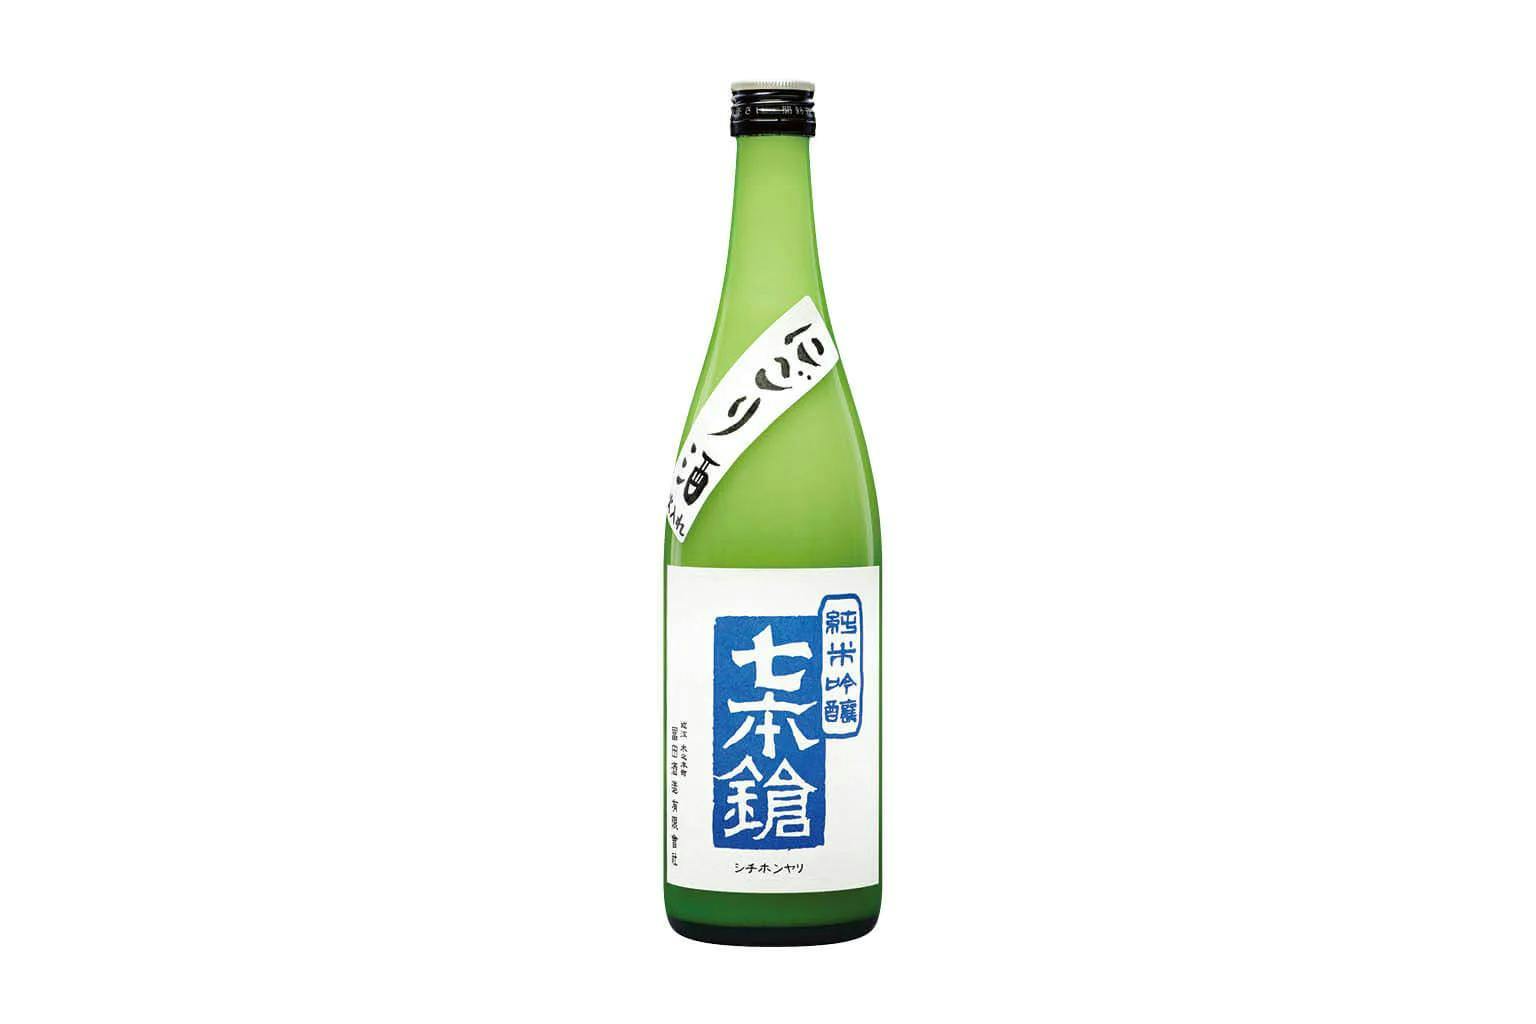 A bottle of Shichi Hon Yari Nigori